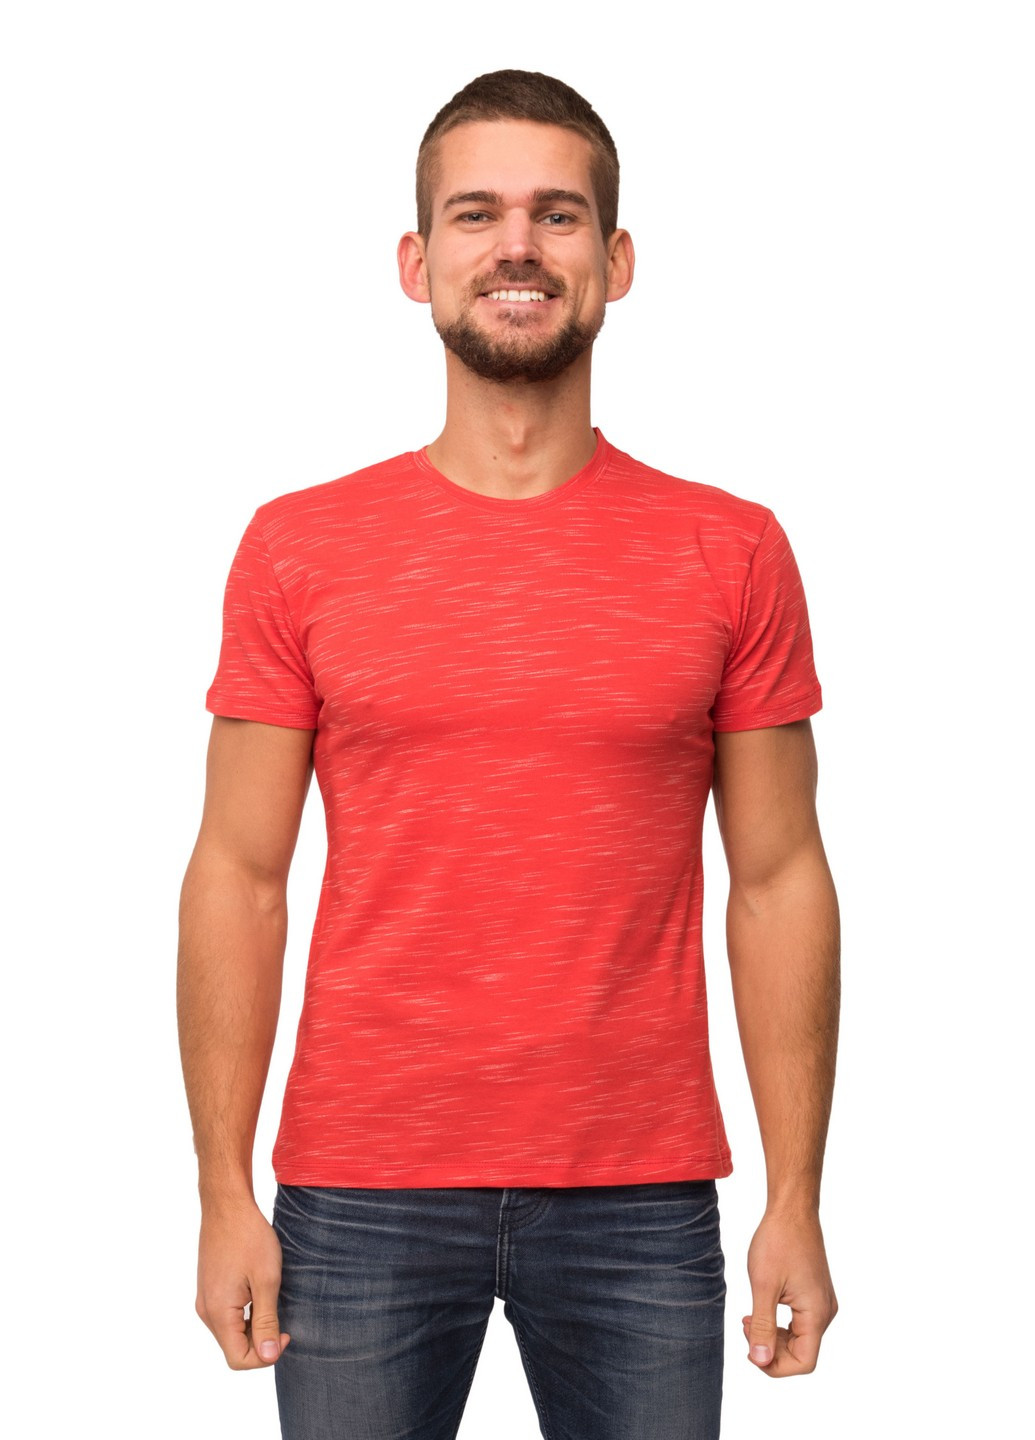 Красная футболка мужская Наталюкс 16-1347